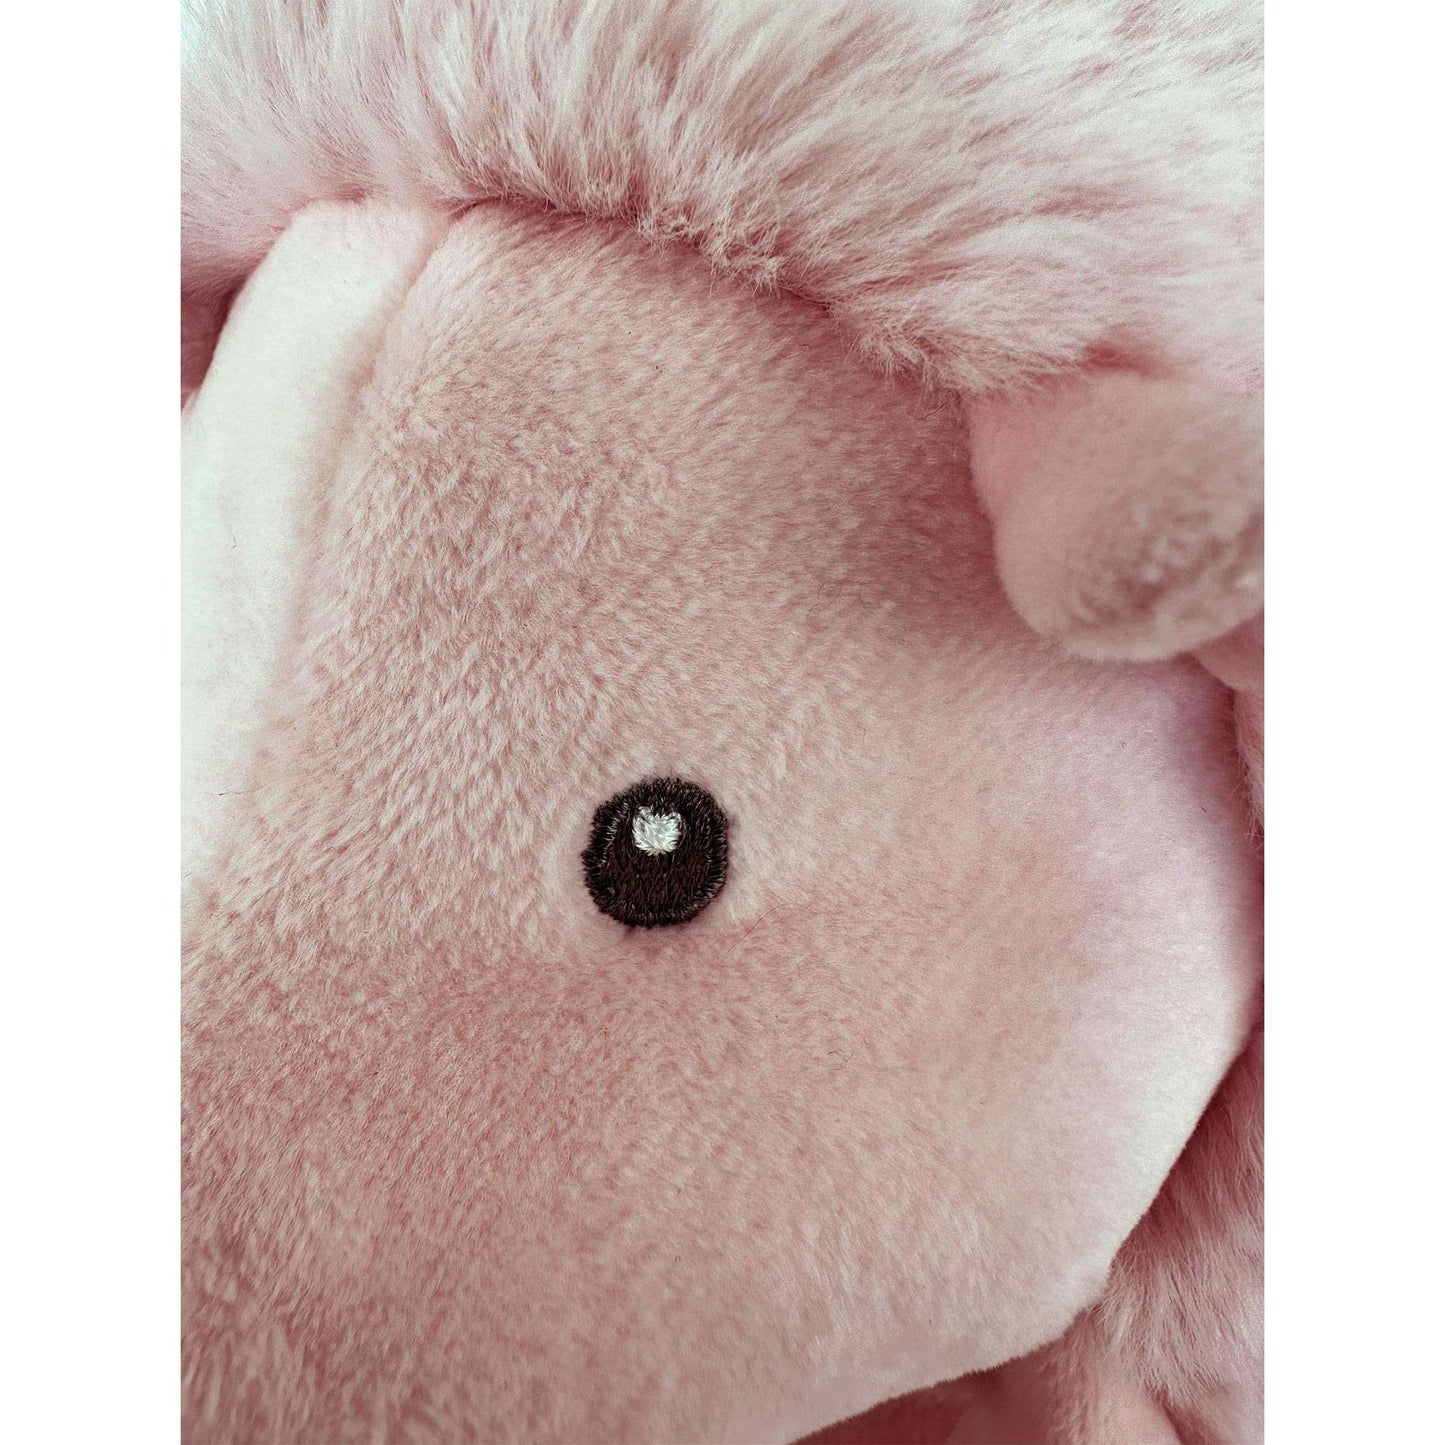 eye of plush hedgehog toy